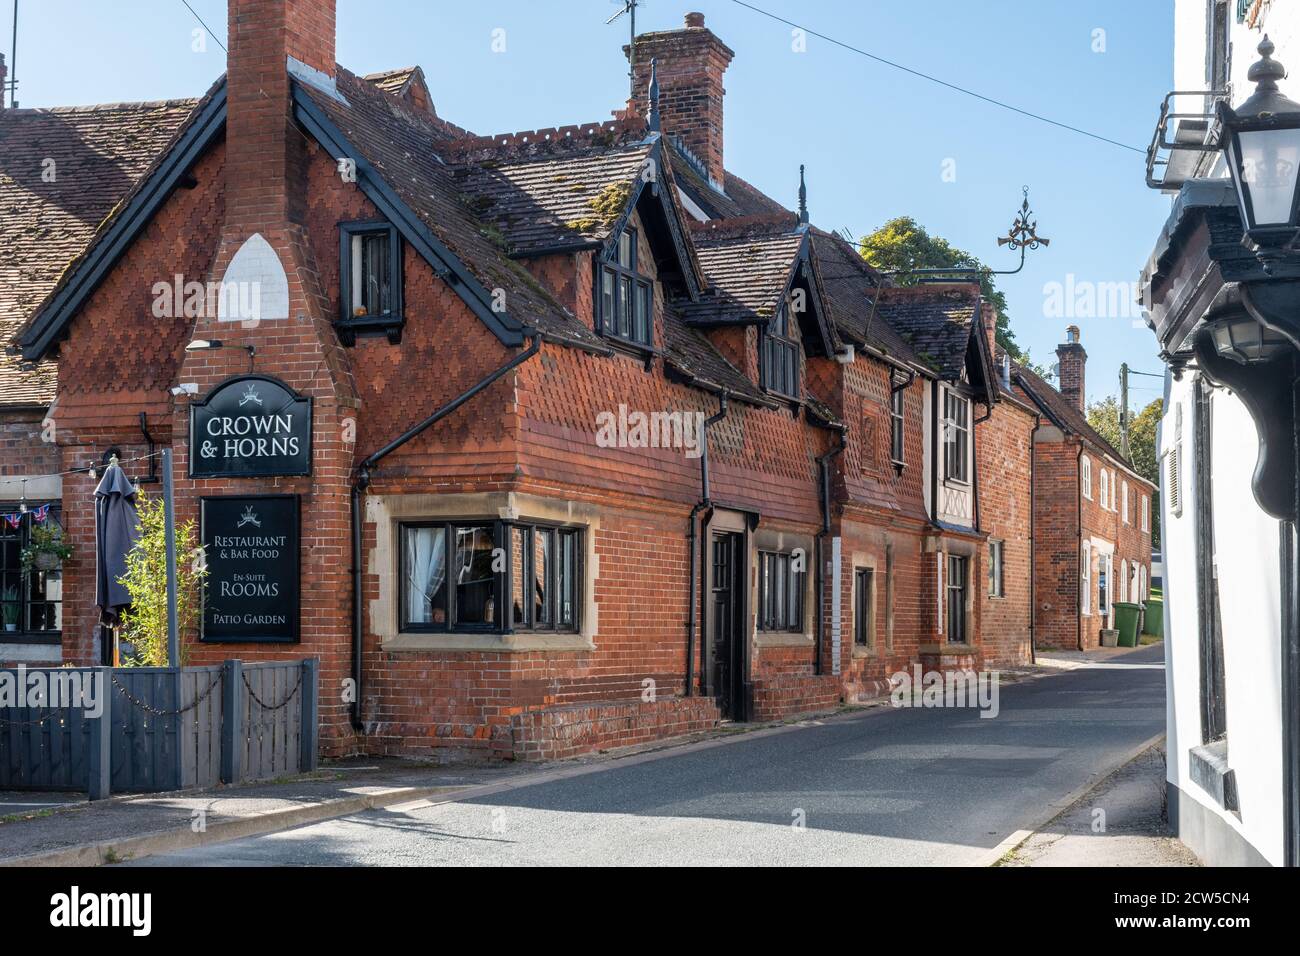 Le pub historique Crown and Horns dans le joli village d'East Ilsley, Berkshire, Angleterre, Royaume-Uni Banque D'Images